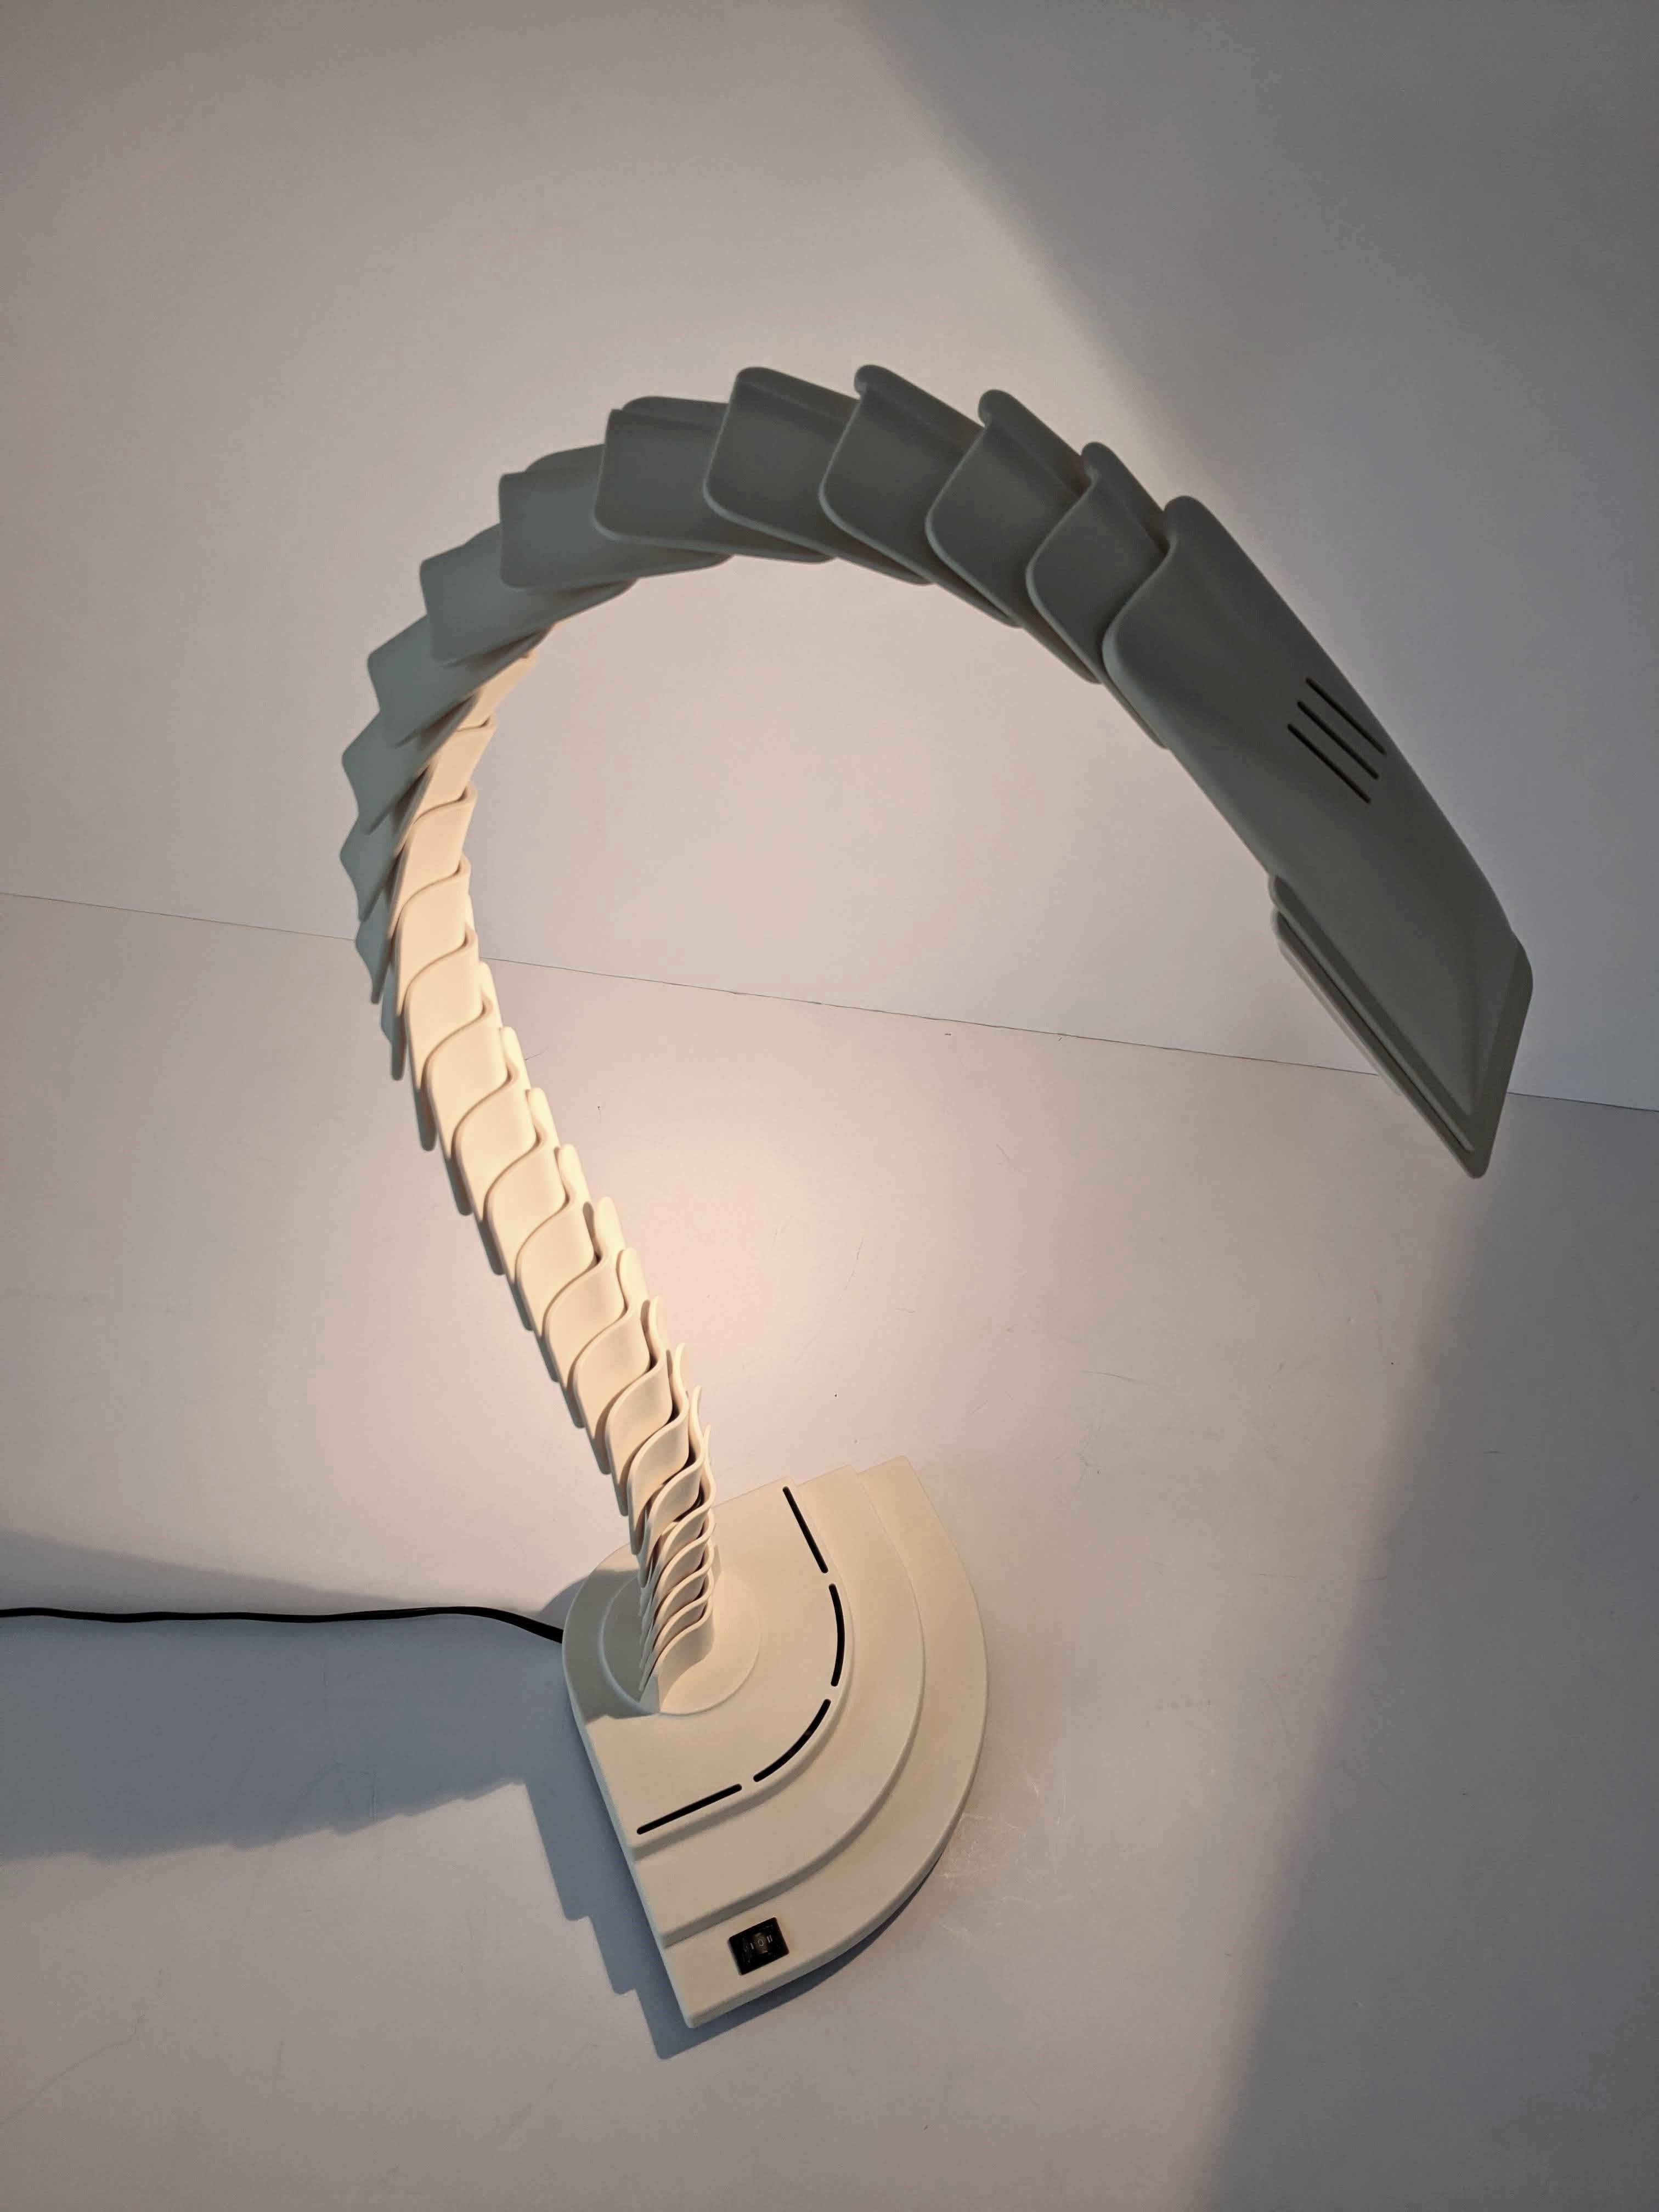 Lampe de table halogène Proteo en forme d'épine dorsale et articulée.

Variously, facile à ajuster dans différentes formes sculpturales.

Construction solide et bien réalisée avec des pièces en PVC et des joints en caoutchouc.

Mesure : 21 in.